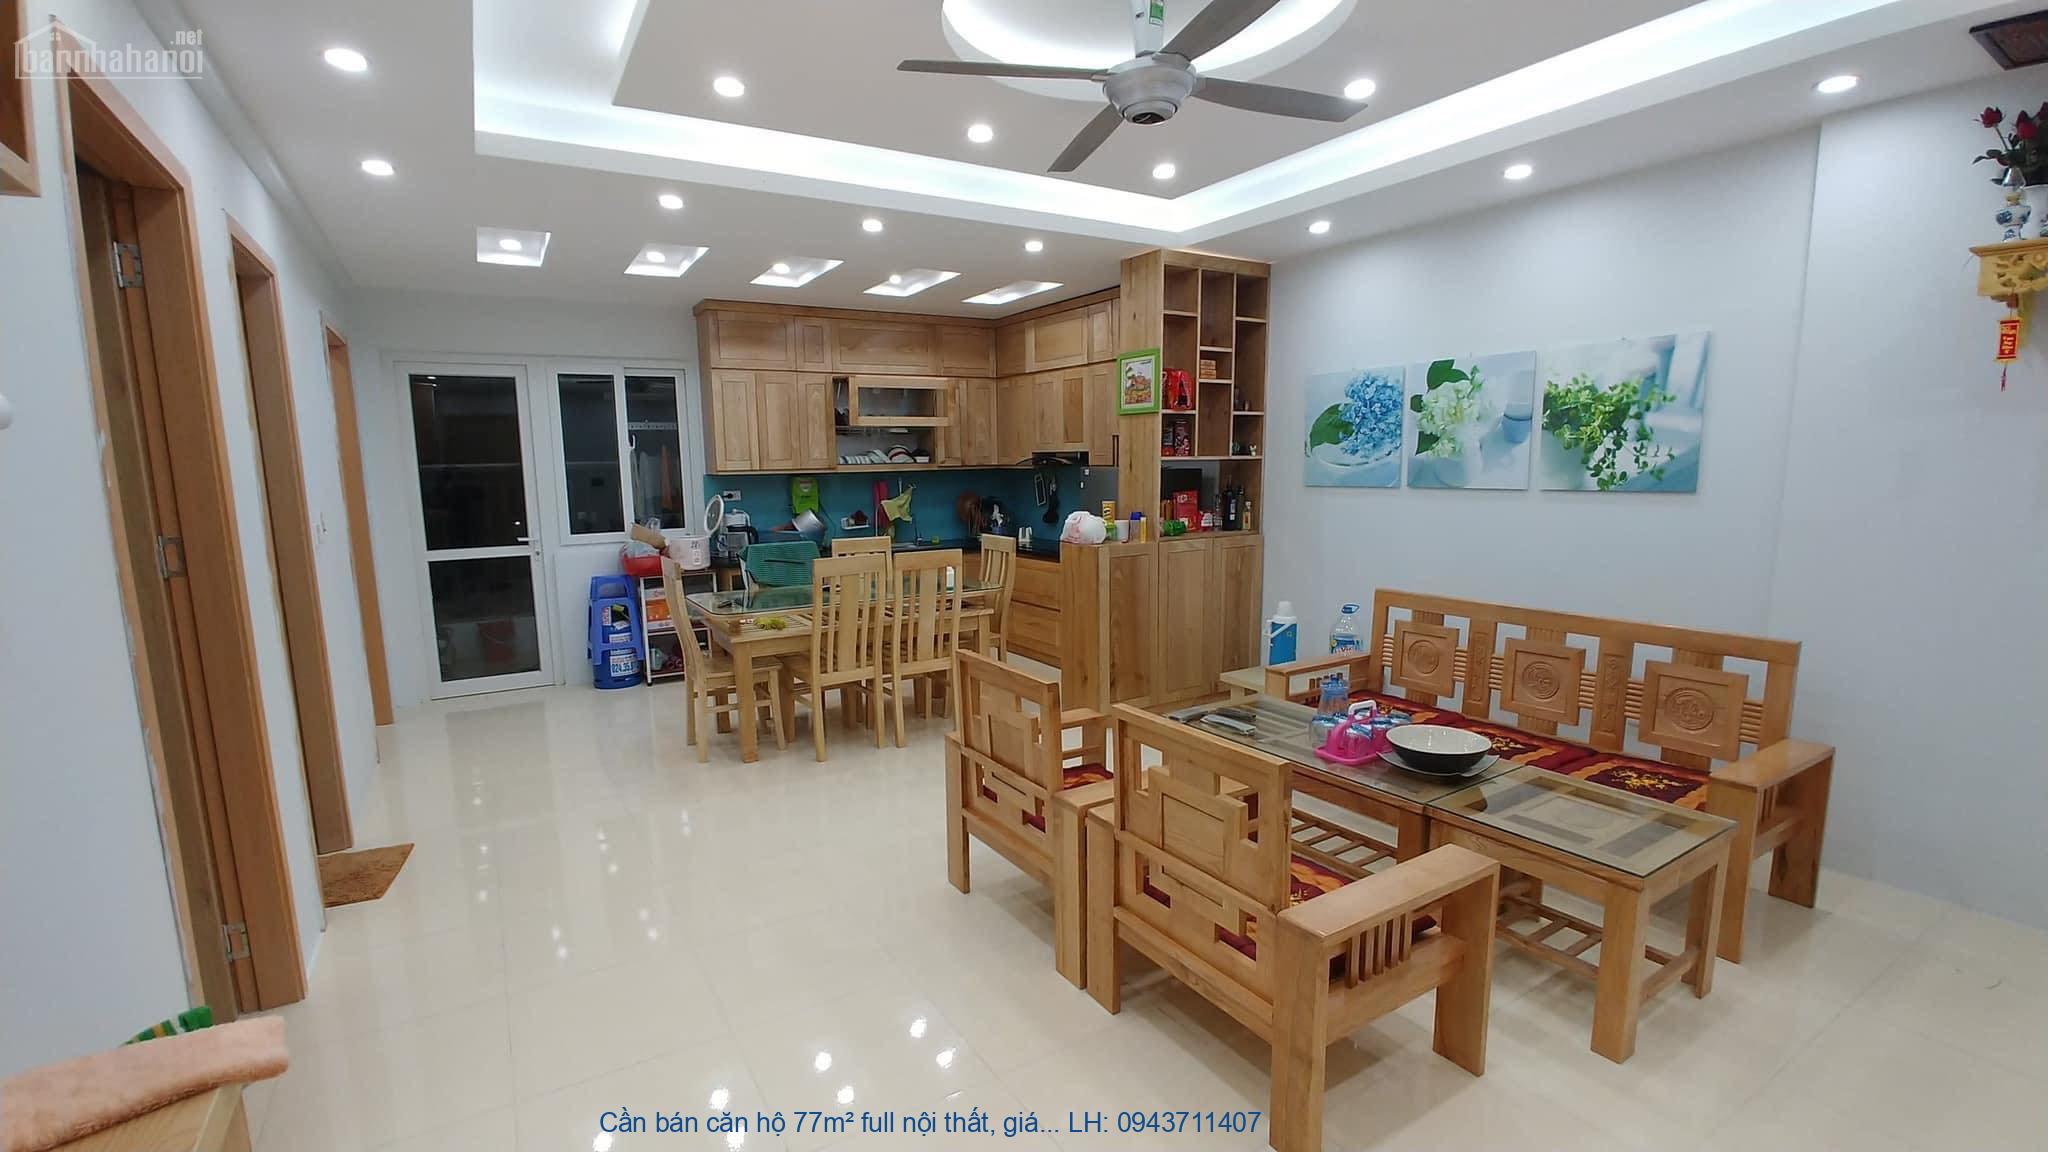 Cần bán căn hộ 77m² full nội thất, giá 1.3 tỉ tại KĐT Thanh Hà Cie